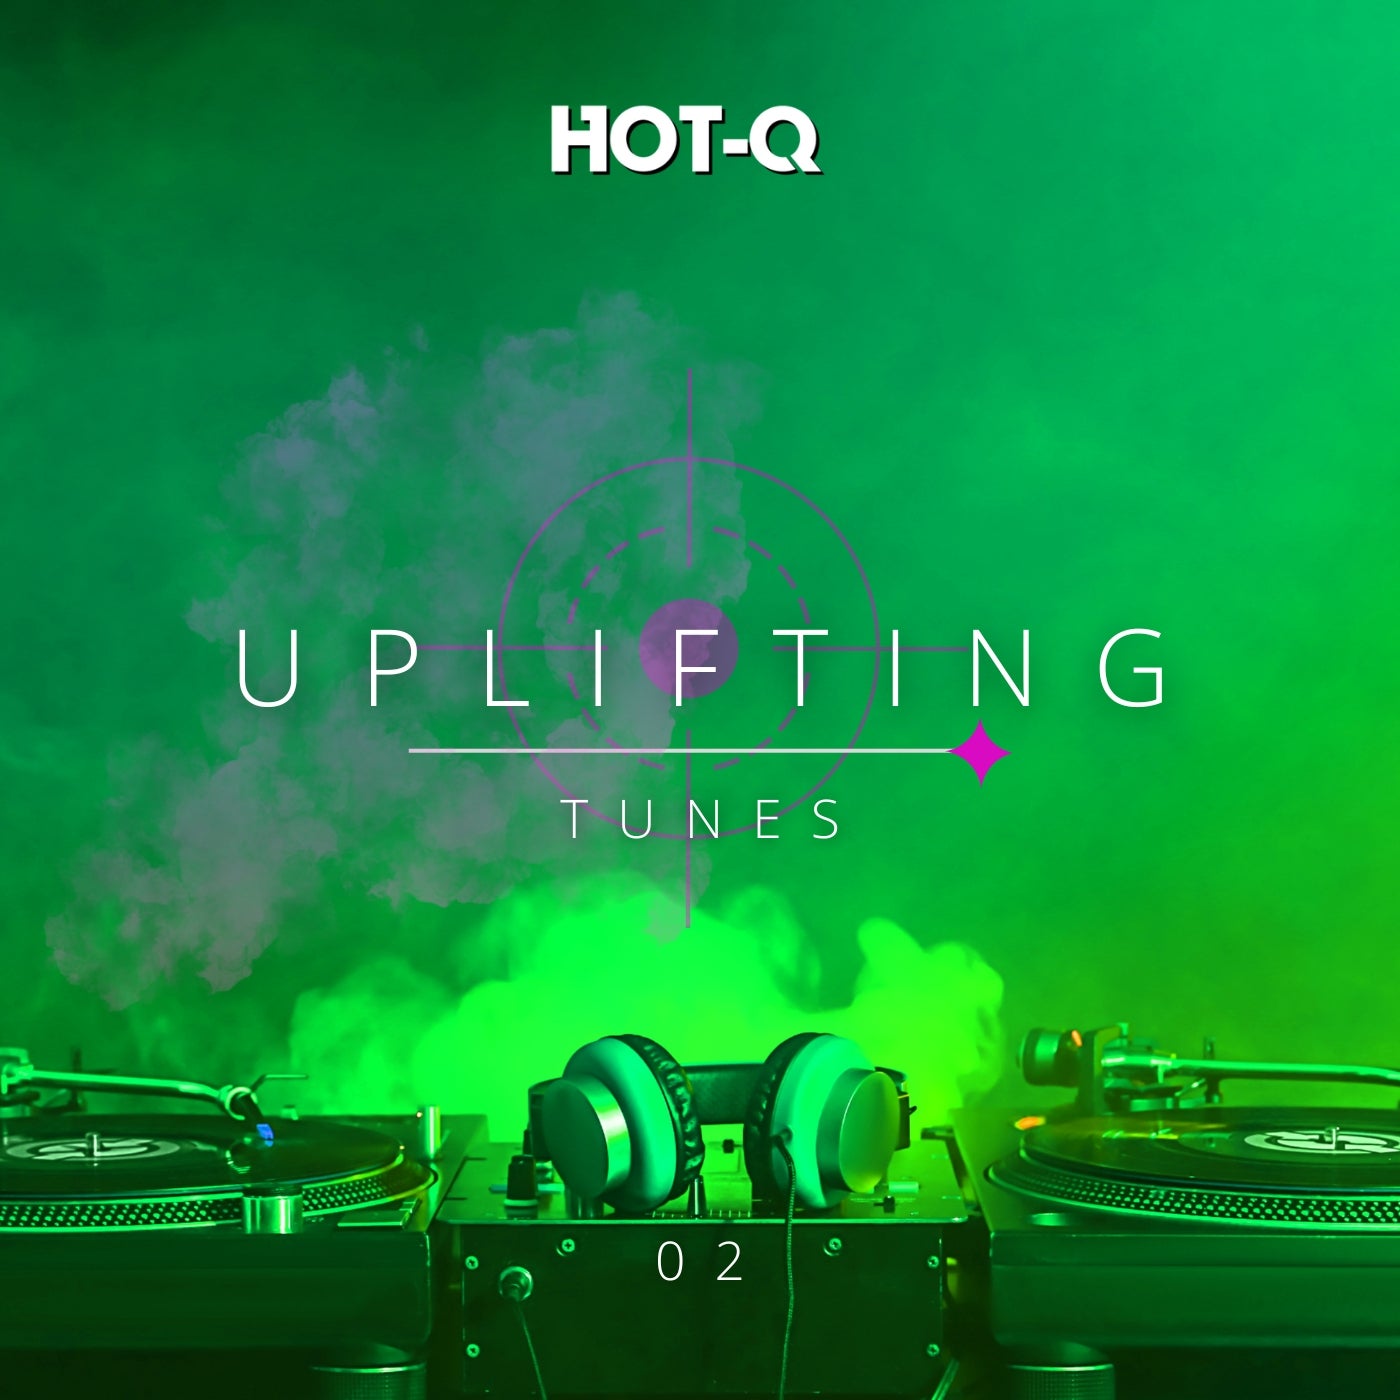 Uplifting Tunes 002